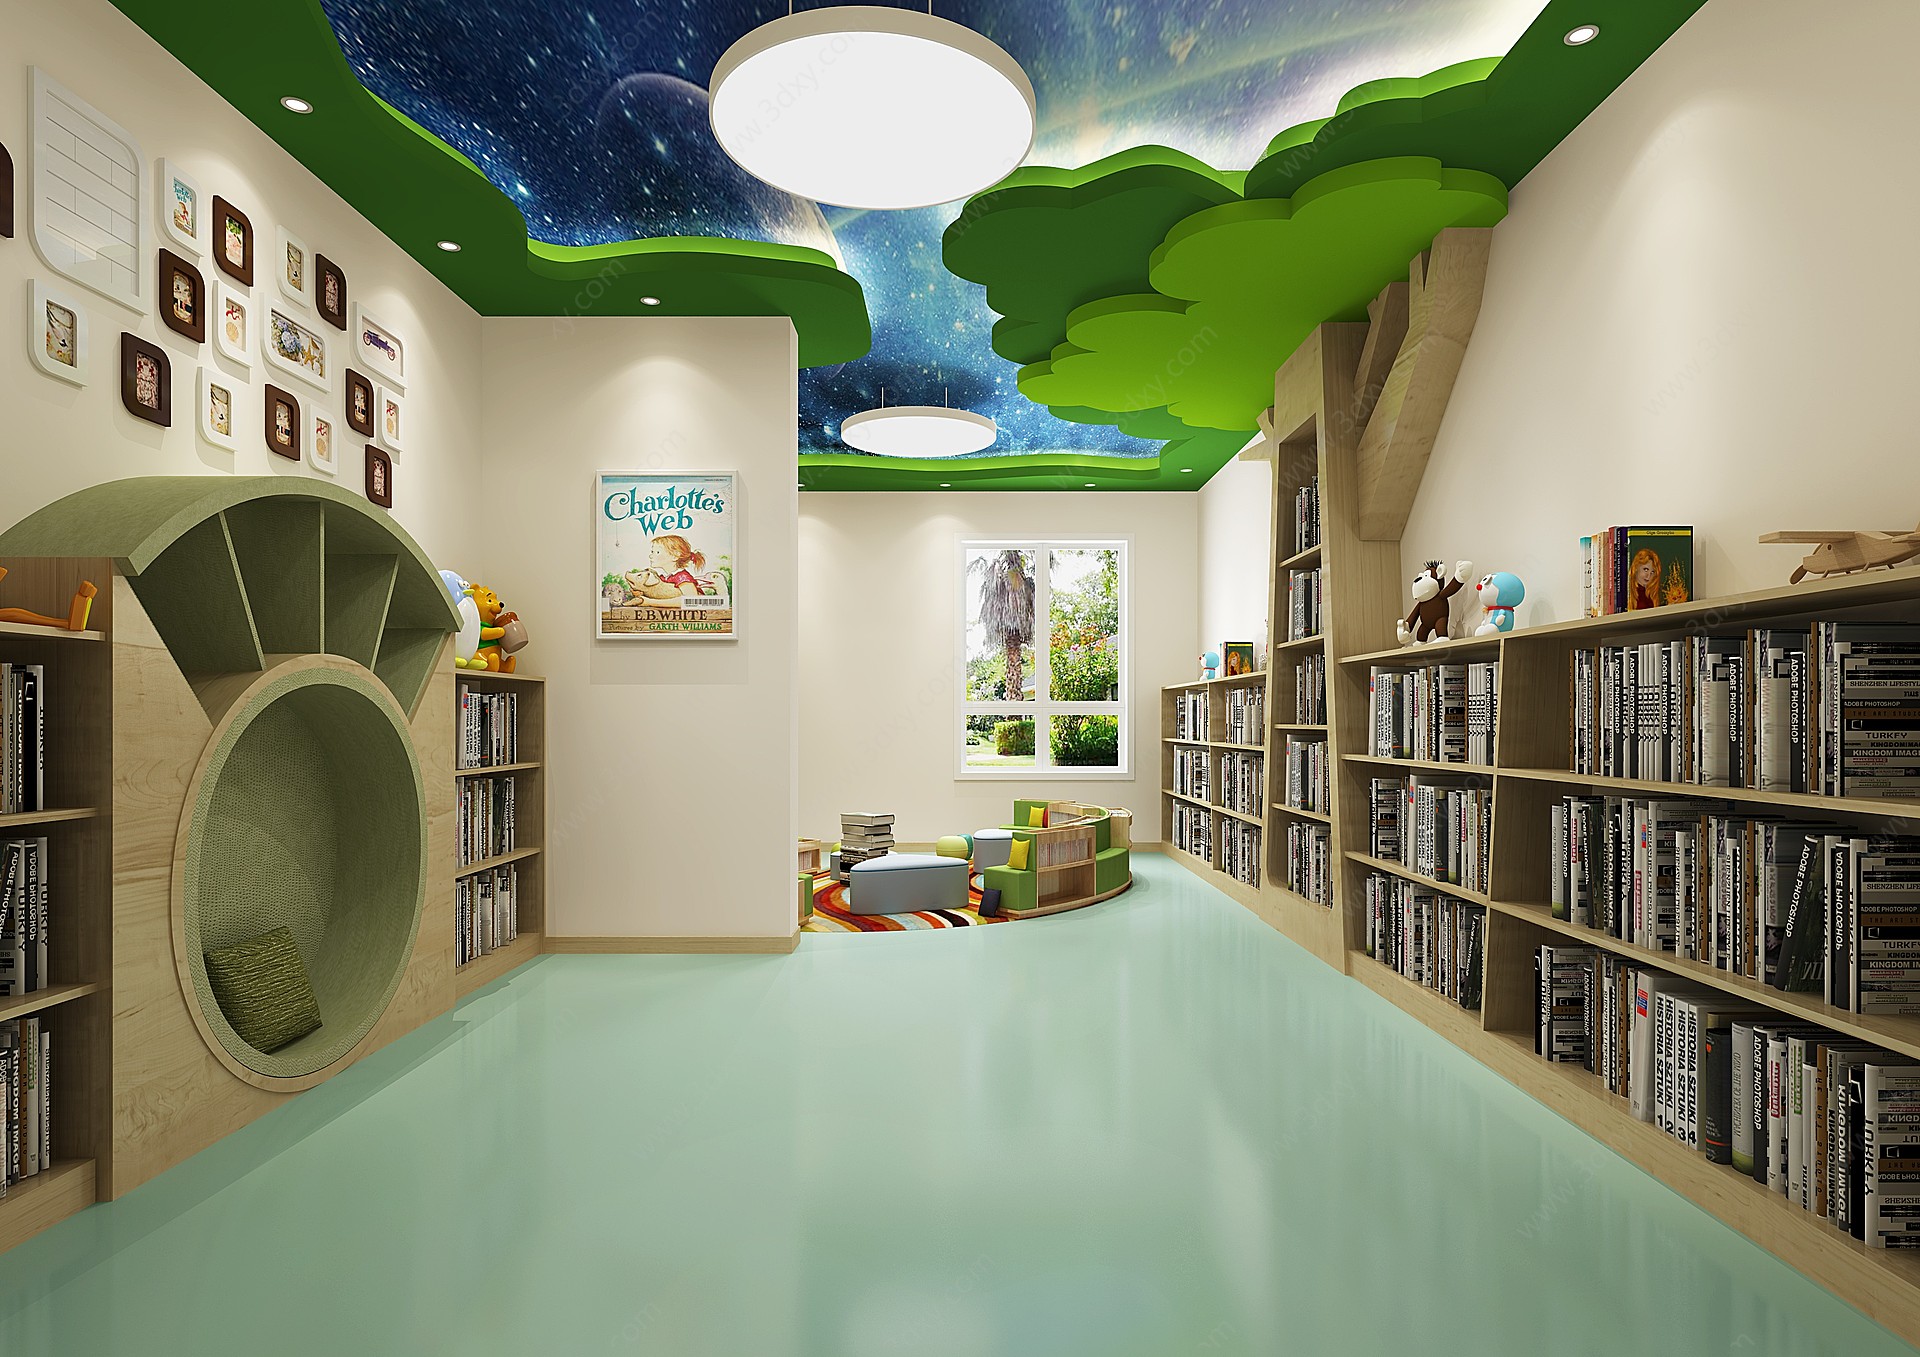 现代幼儿园阅读室3D模型